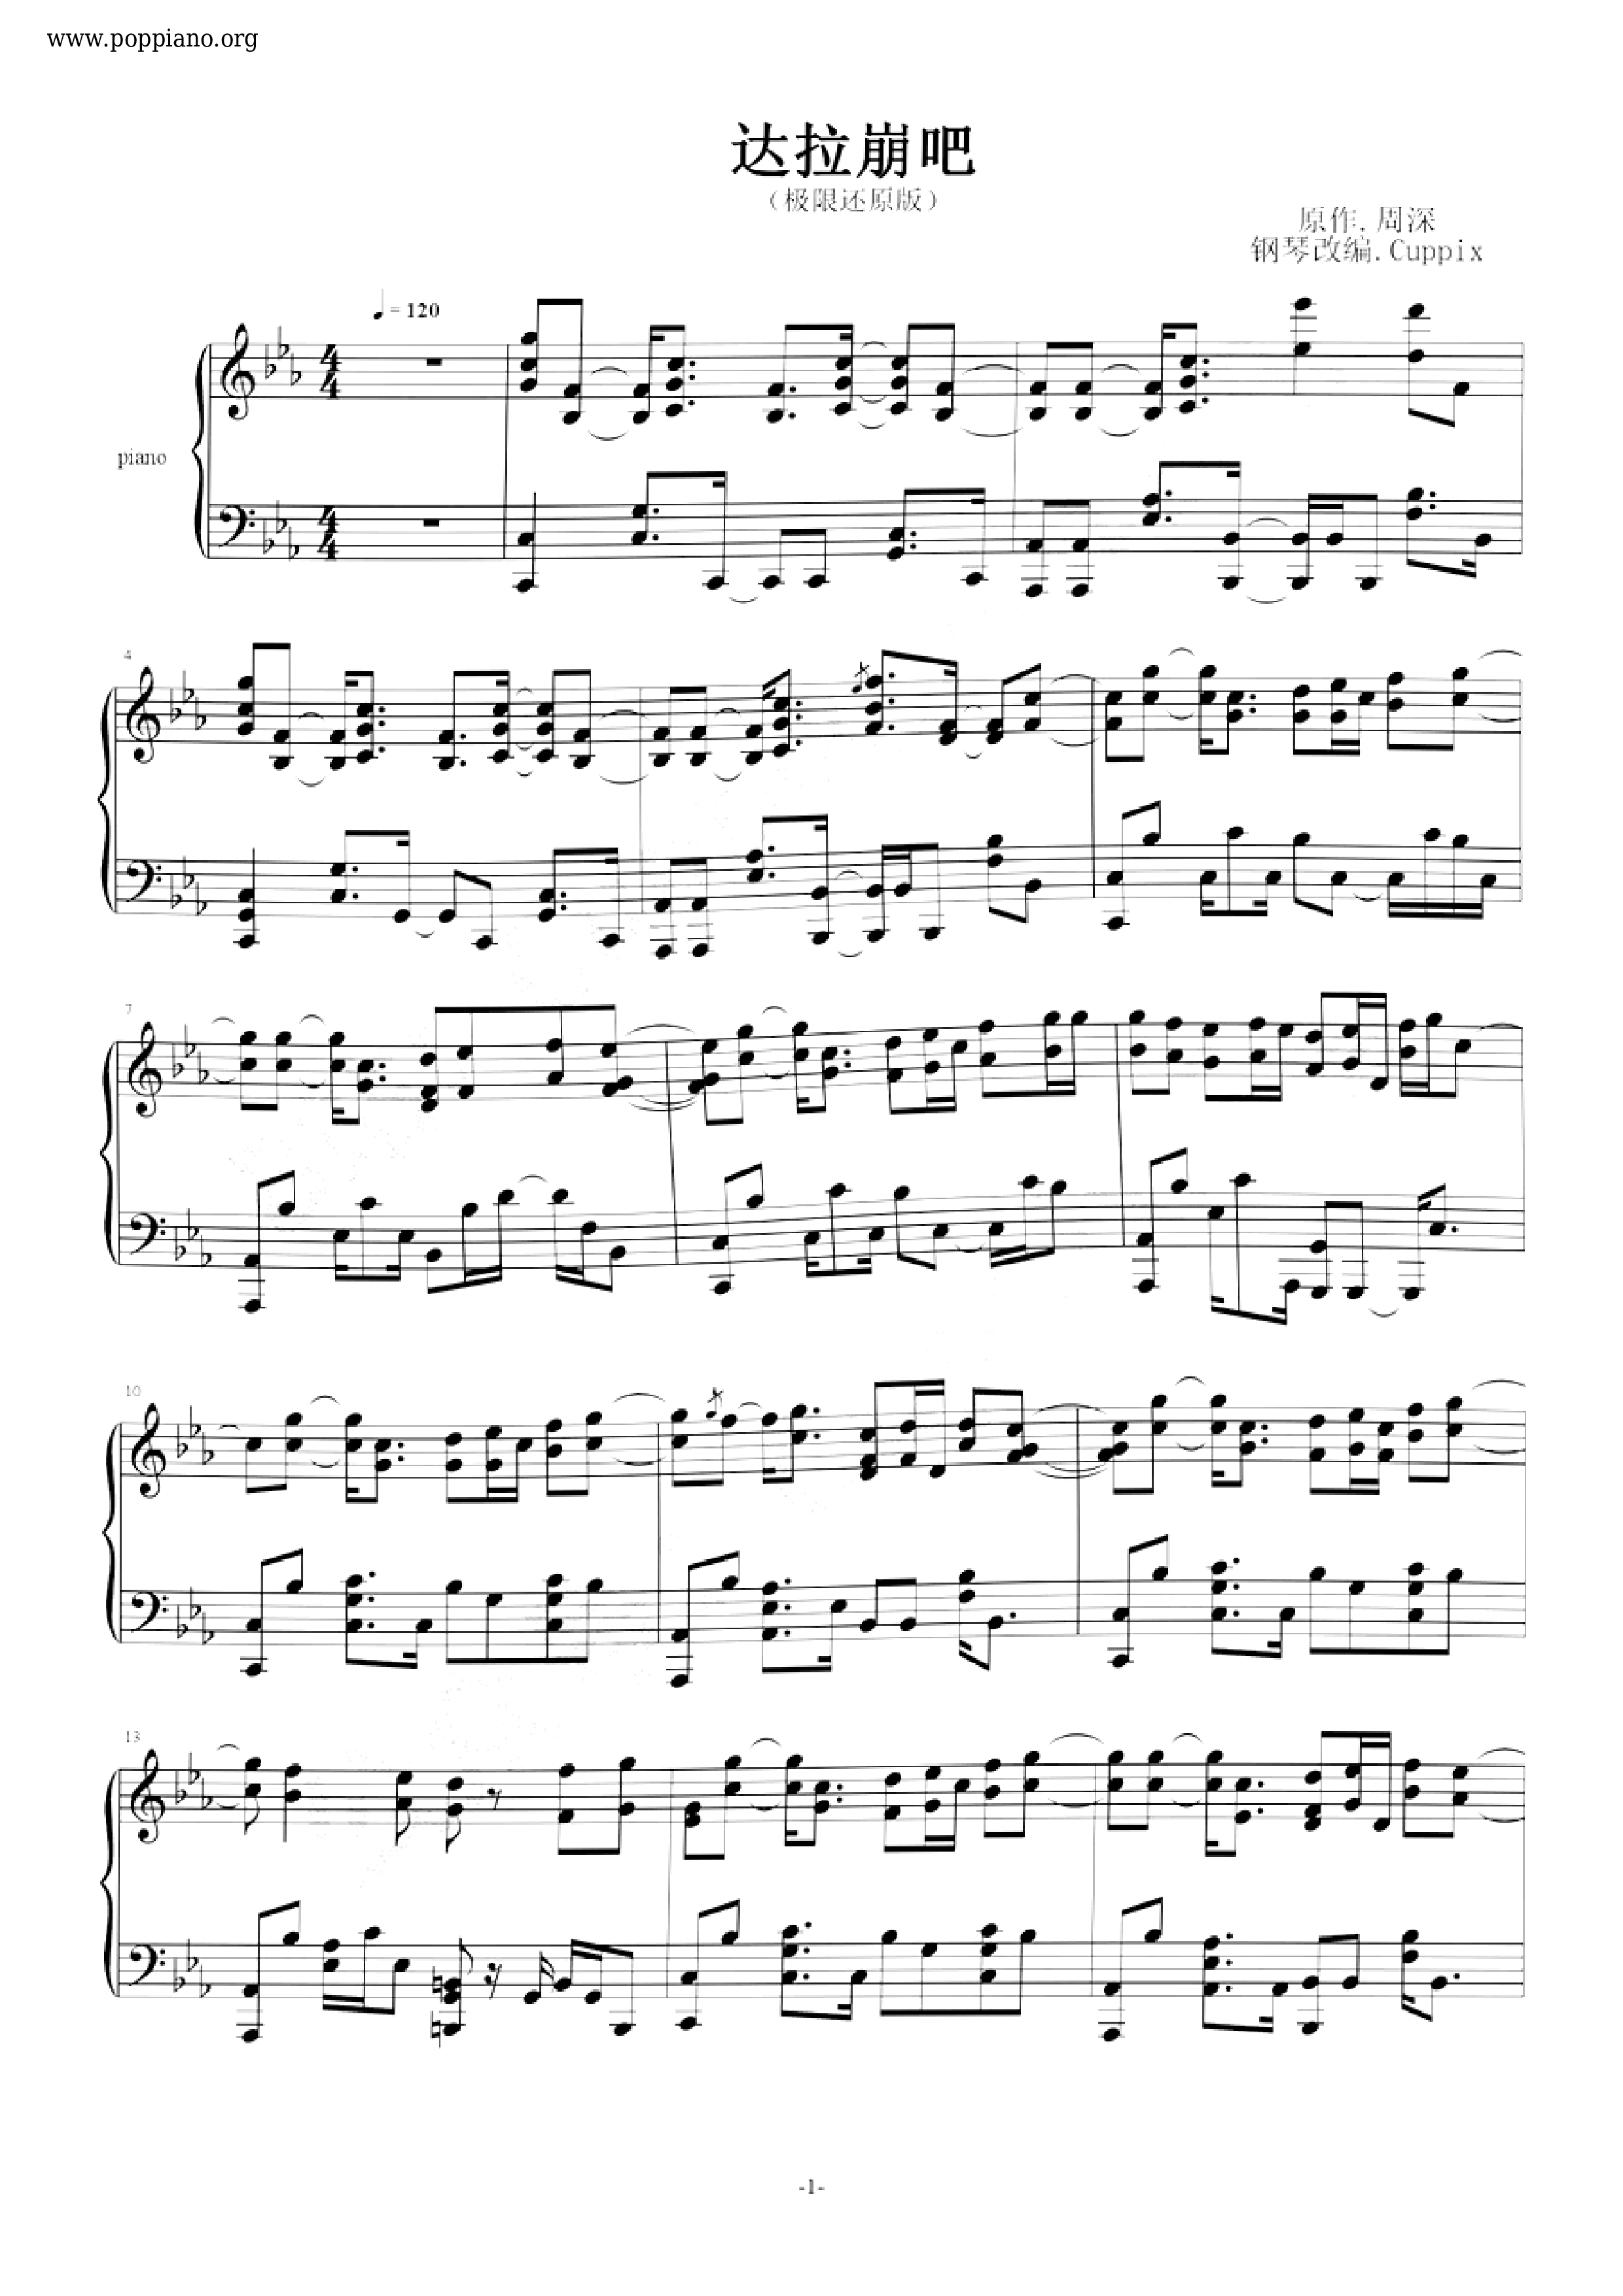 Dalabang Score